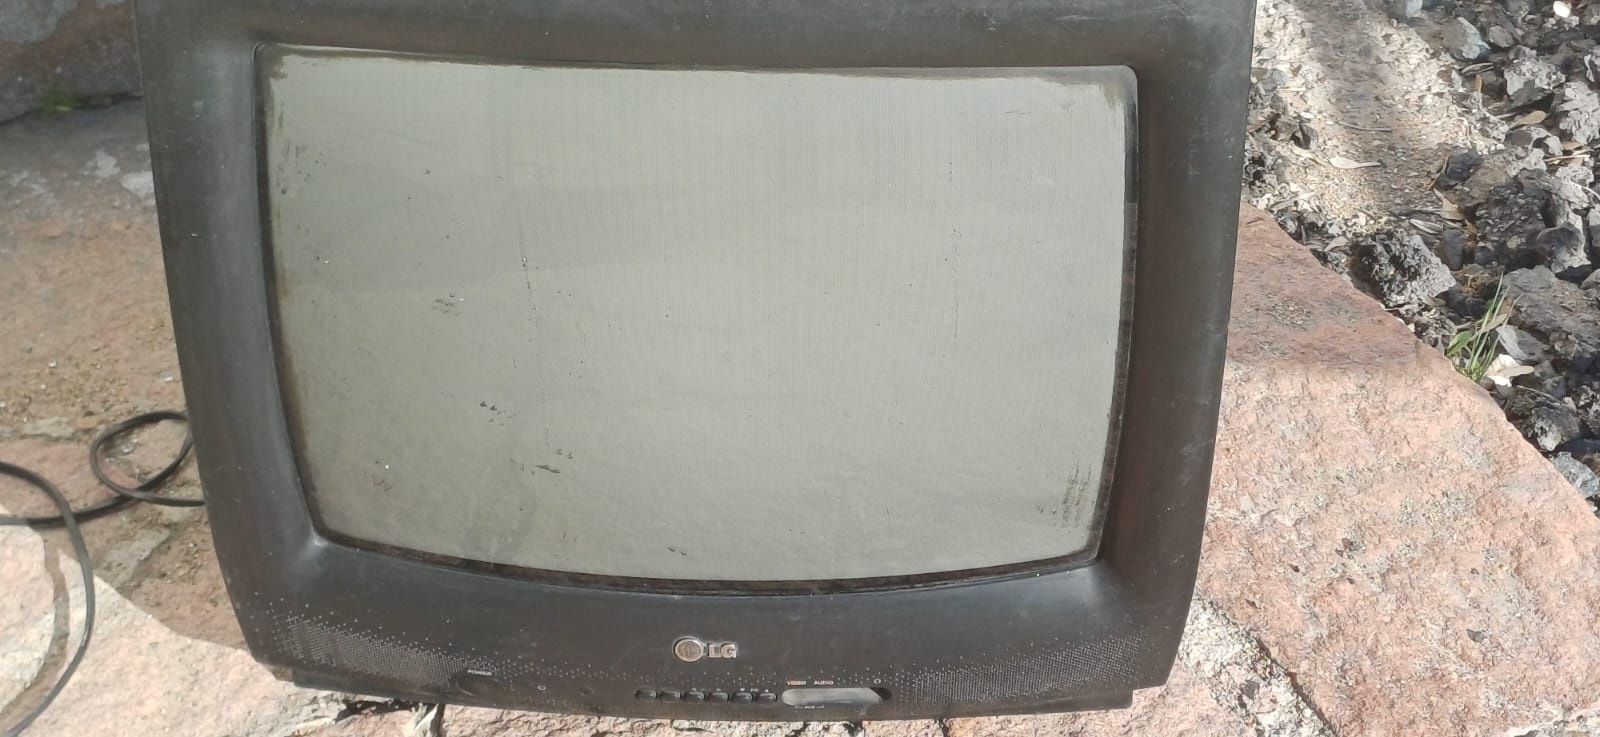 Телевизоры рабочем состоянии